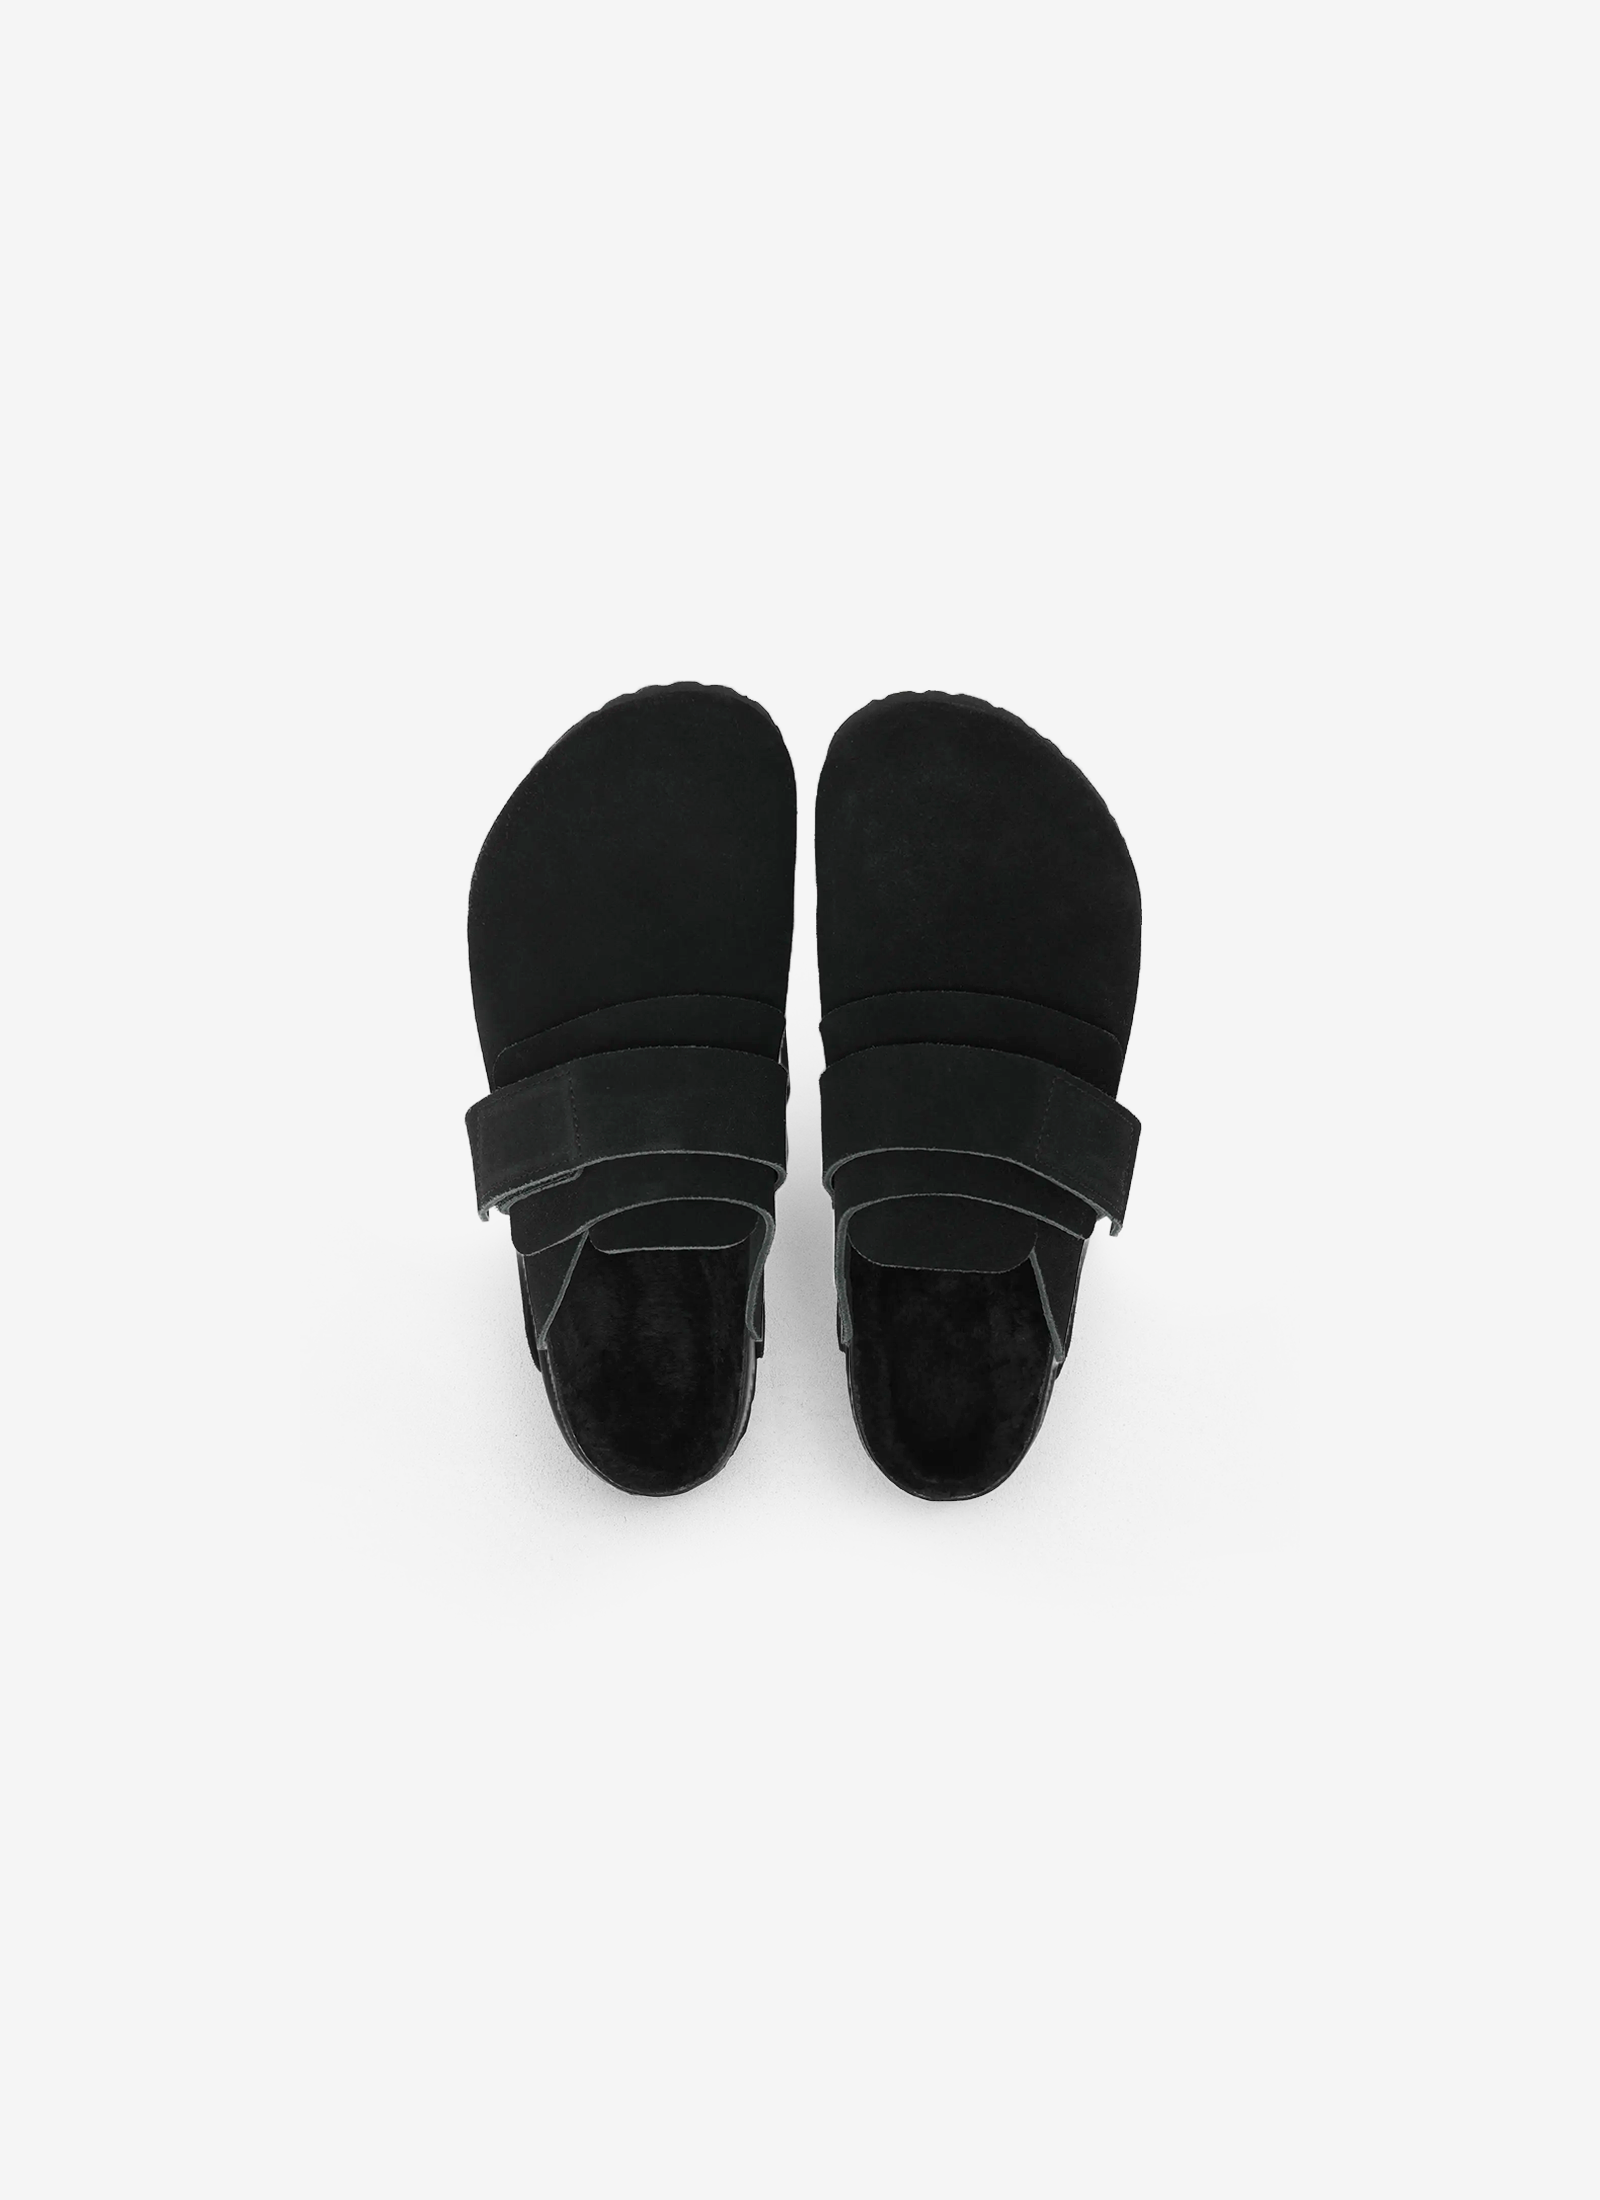 Tekla x Birkenstock - Nagoya Shoes in Slate